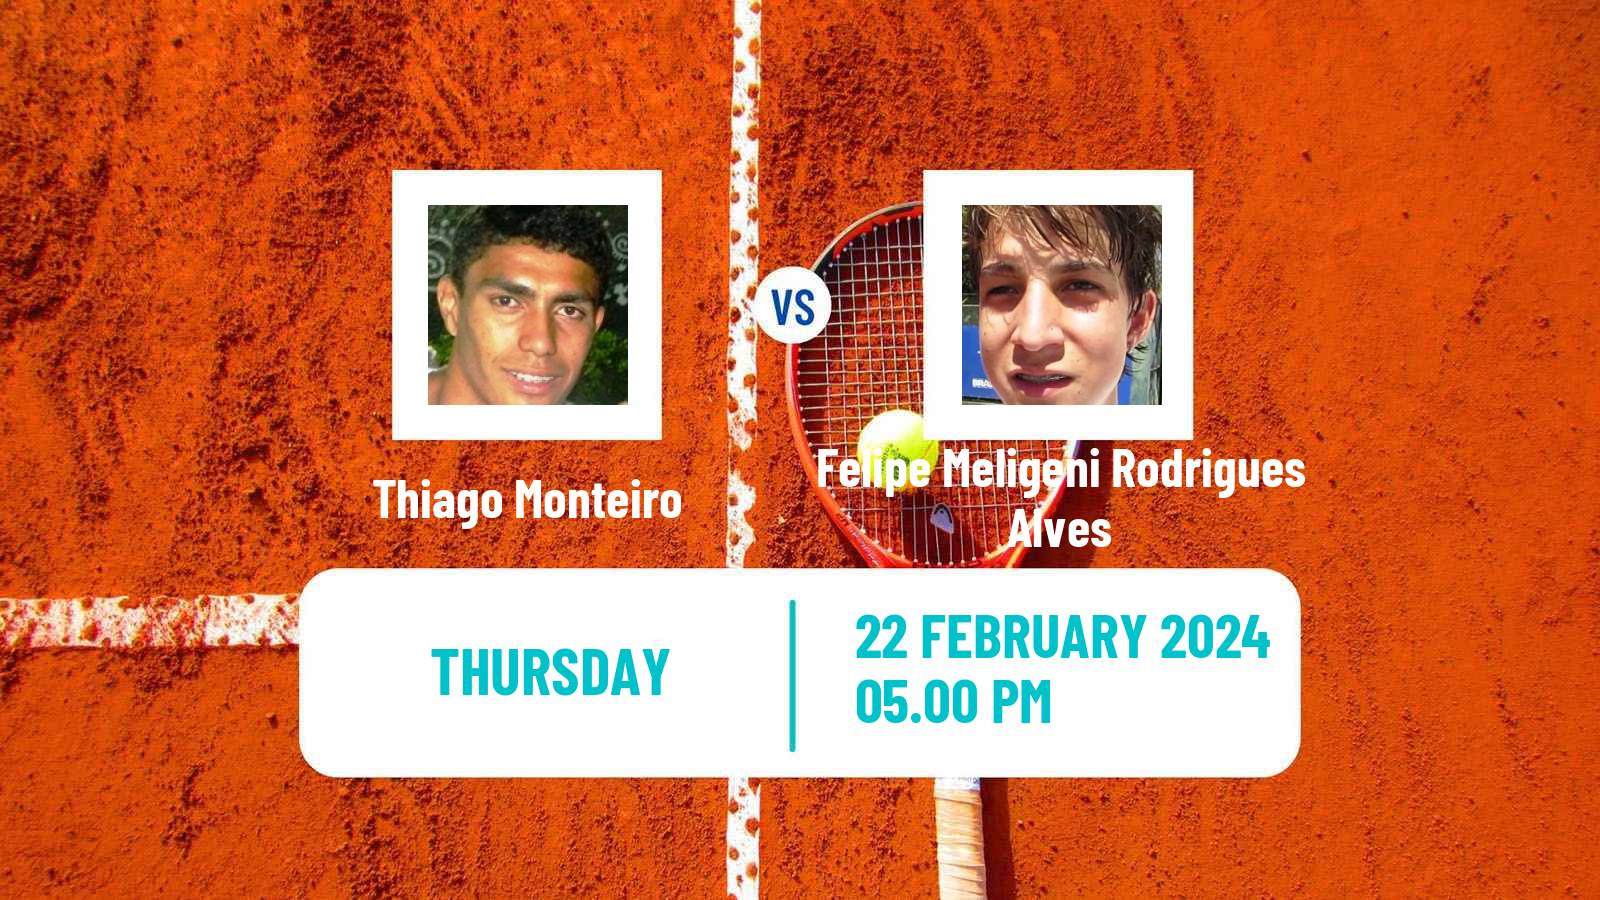 Tennis ATP Rio de Janeiro Thiago Monteiro - Felipe Meligeni Rodrigues Alves